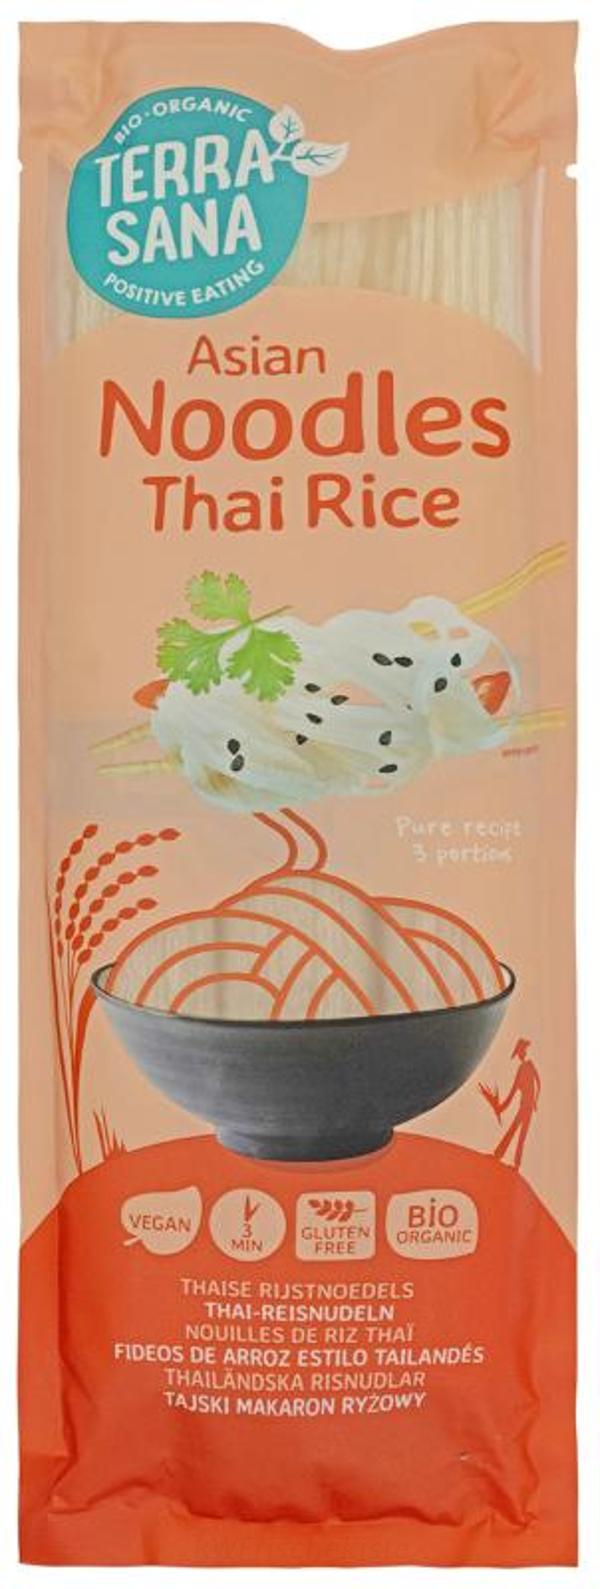 Produktfoto zu Thai-Reisnudeln